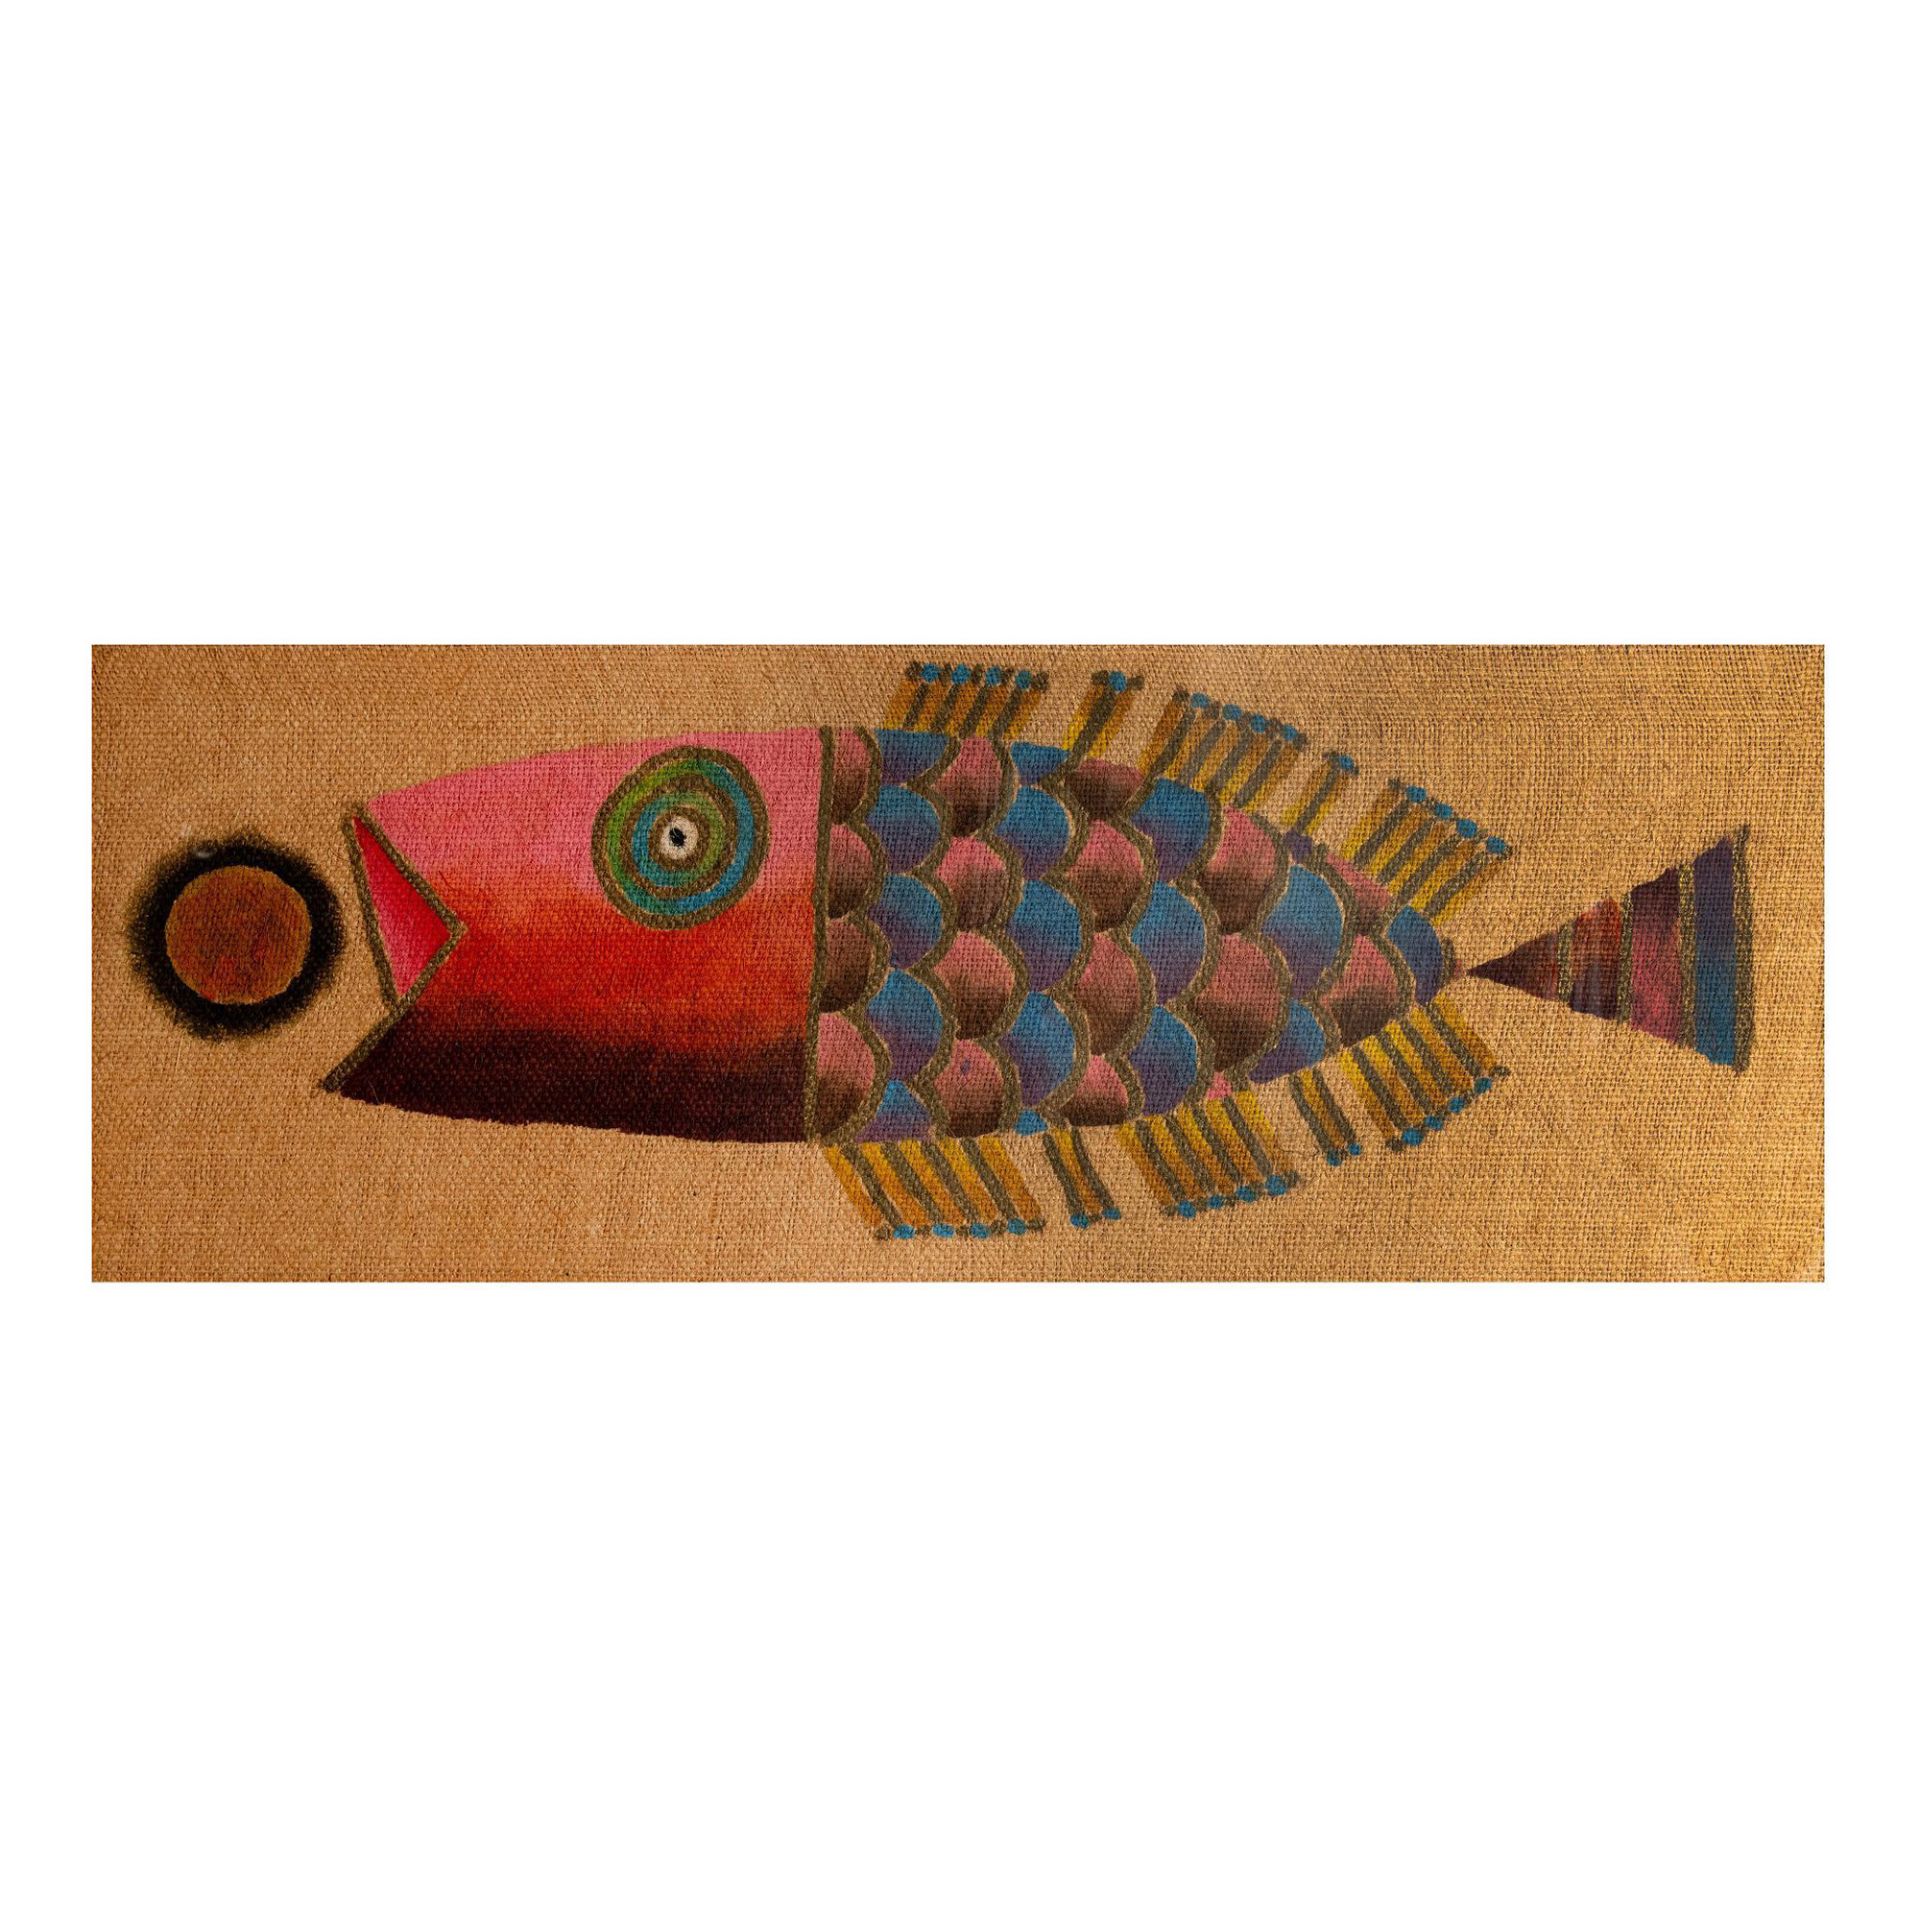 Large Original Acrylic on Thick Burlap, Whimsical Fish - Image 2 of 5